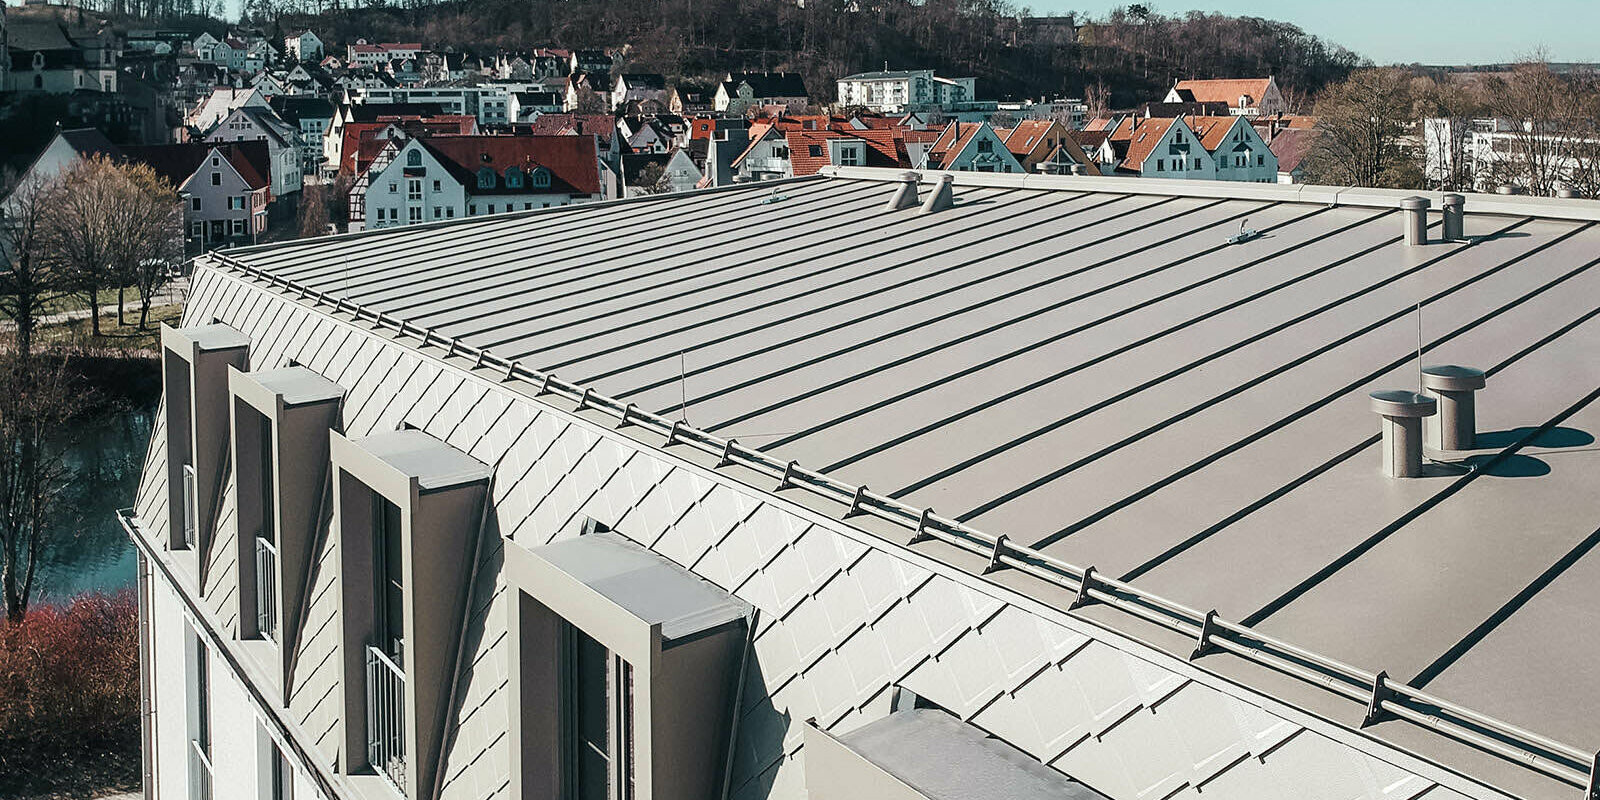 Pohled na plochu střechy s falcovanými šablonami 29 × 29 na stěnách valbové střechy a hliníkové šáry plechu PREFALZ střeše s mírným sklonem.